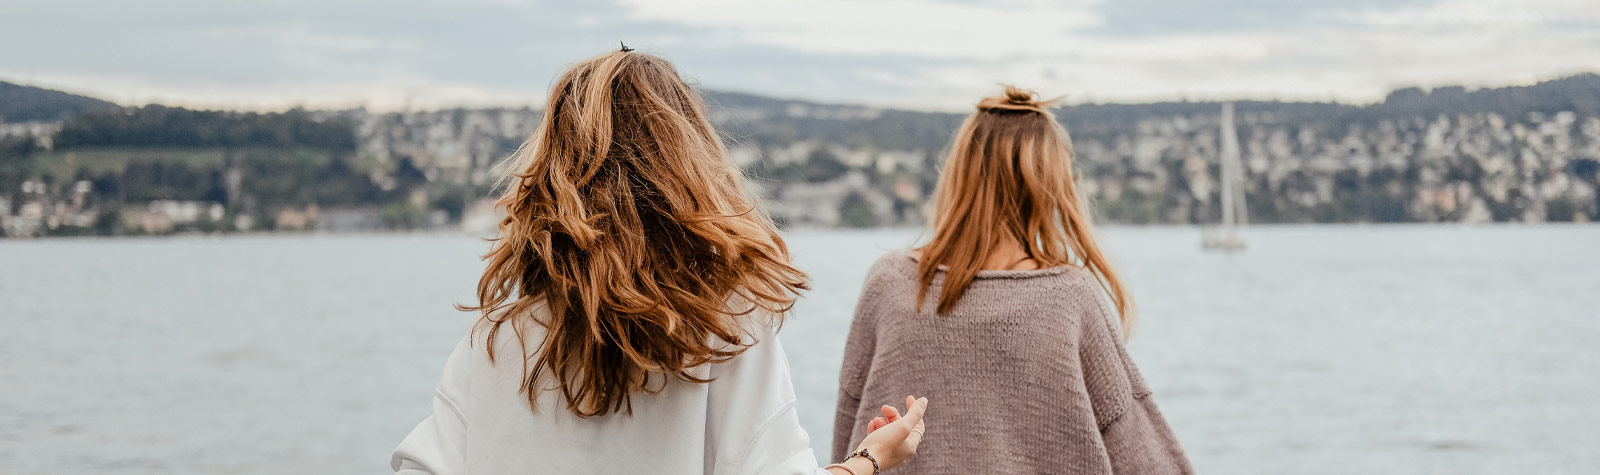 Zwei junge Frauen, die von hinten fotografiert wurden und in Richtung Hafengewässer schauen